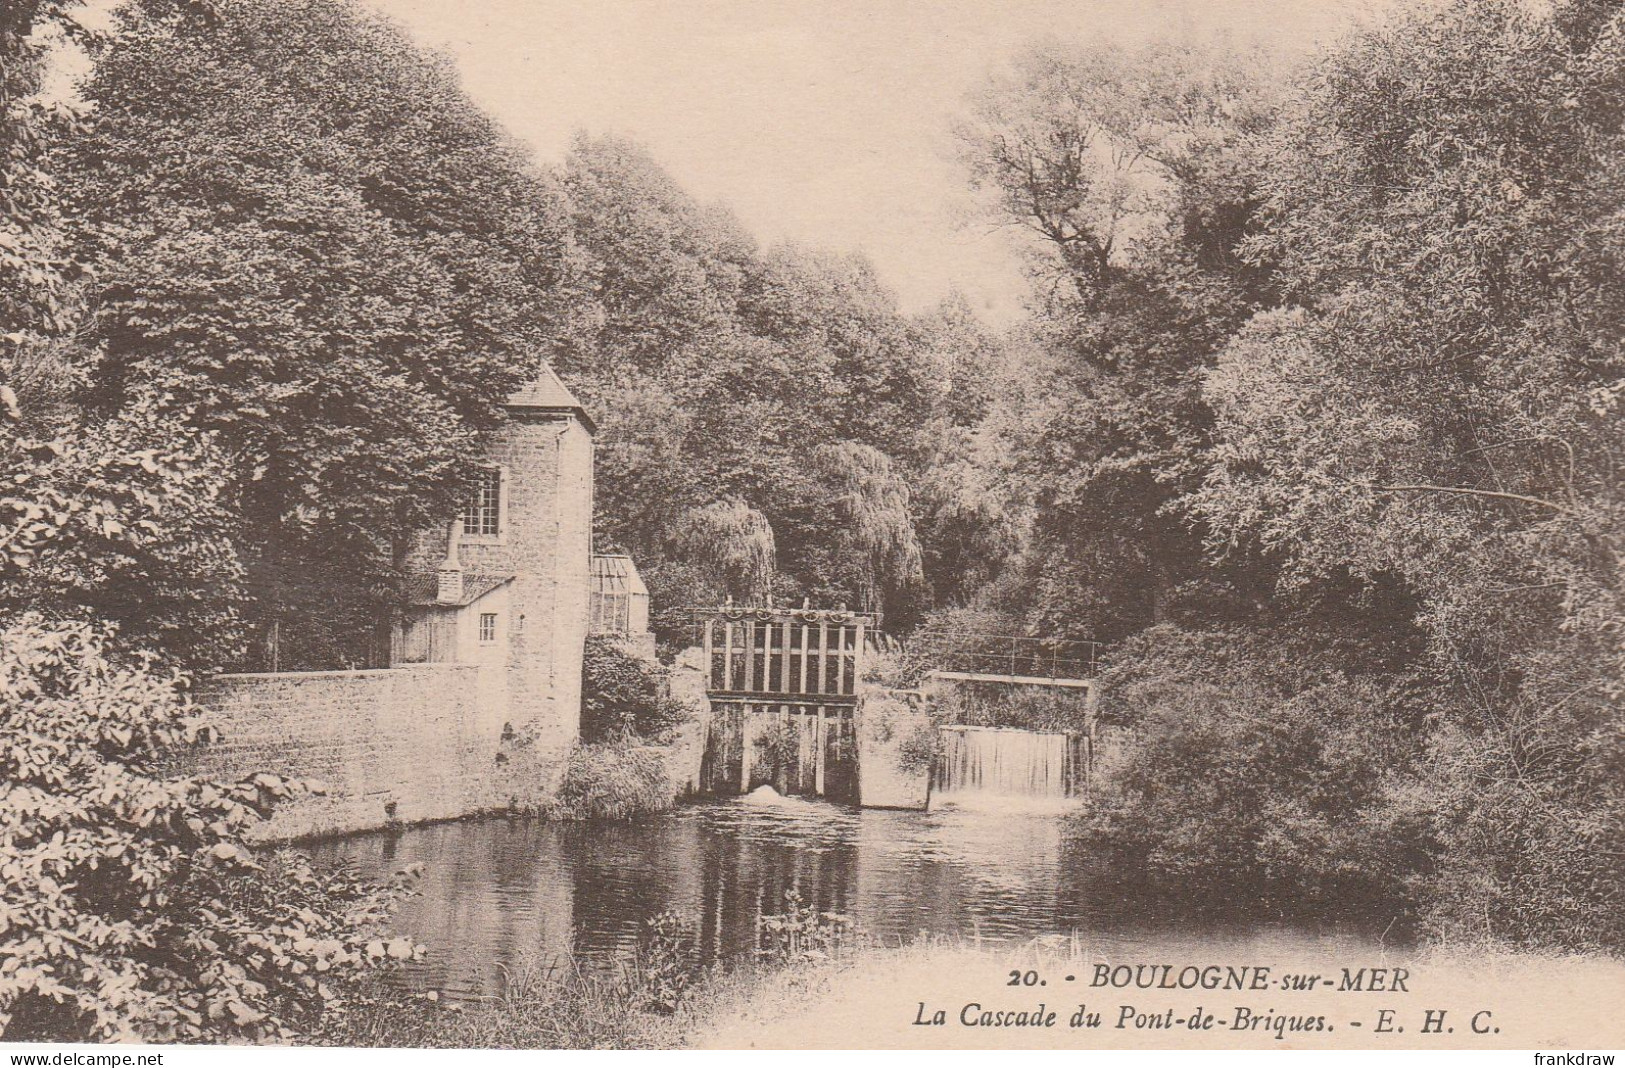 Postcard - Boulogne - Sur - Mer  - La Cascade Du Pont - De - Briques, E.H.C - Card No.20 - Very Good - Unclassified